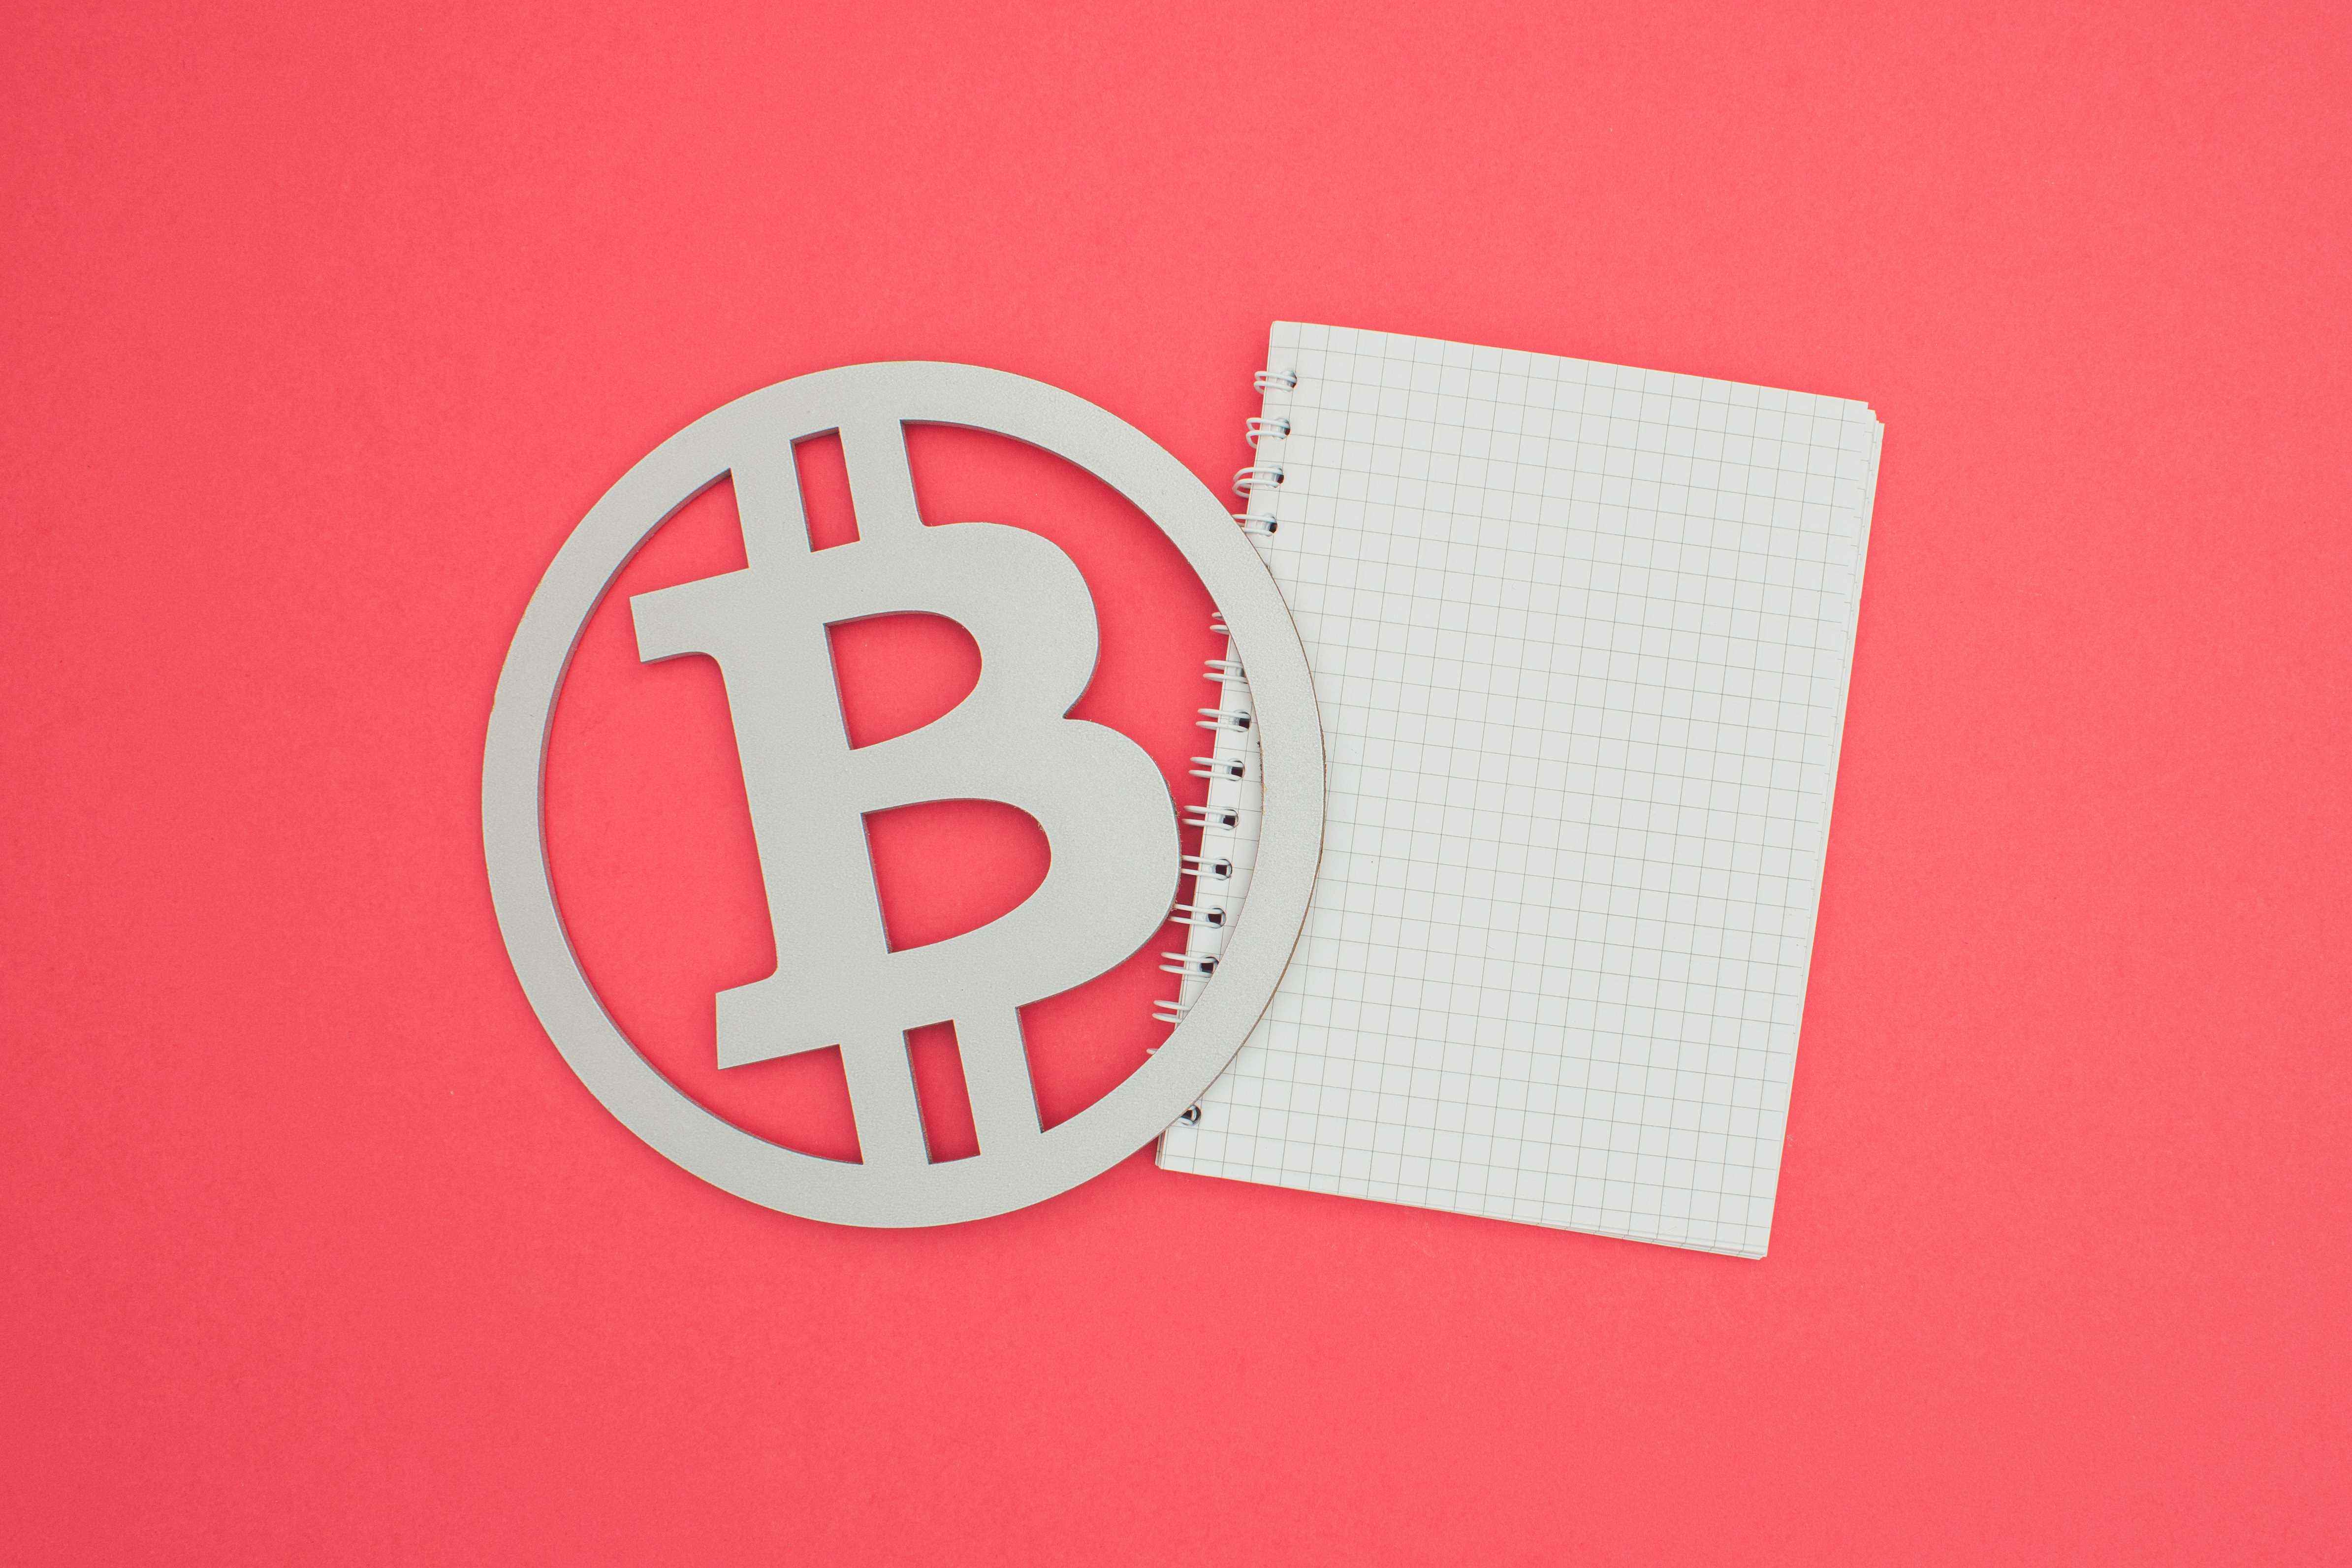 Bir Bitcoin sembolü ve somon arka planına karşı beyaz bir defter görüntüsü.